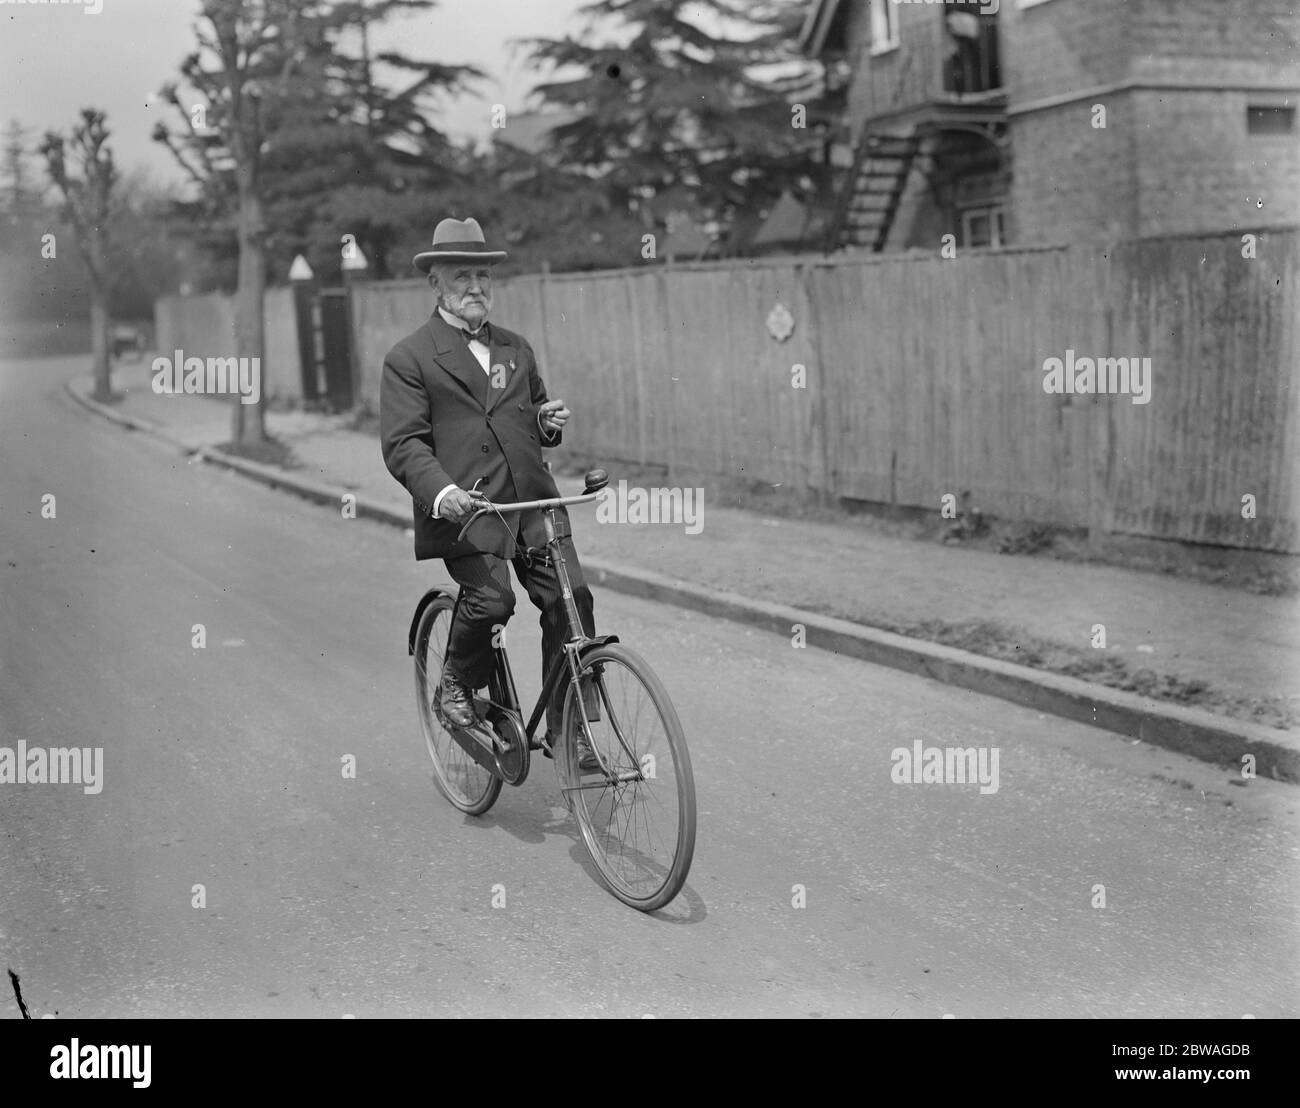 Sir William carter , maire de Windsor , photographié à l'occasion de son 80e anniversaire. Il se poursuit à la mairie du 25 mai 1928 Banque D'Images